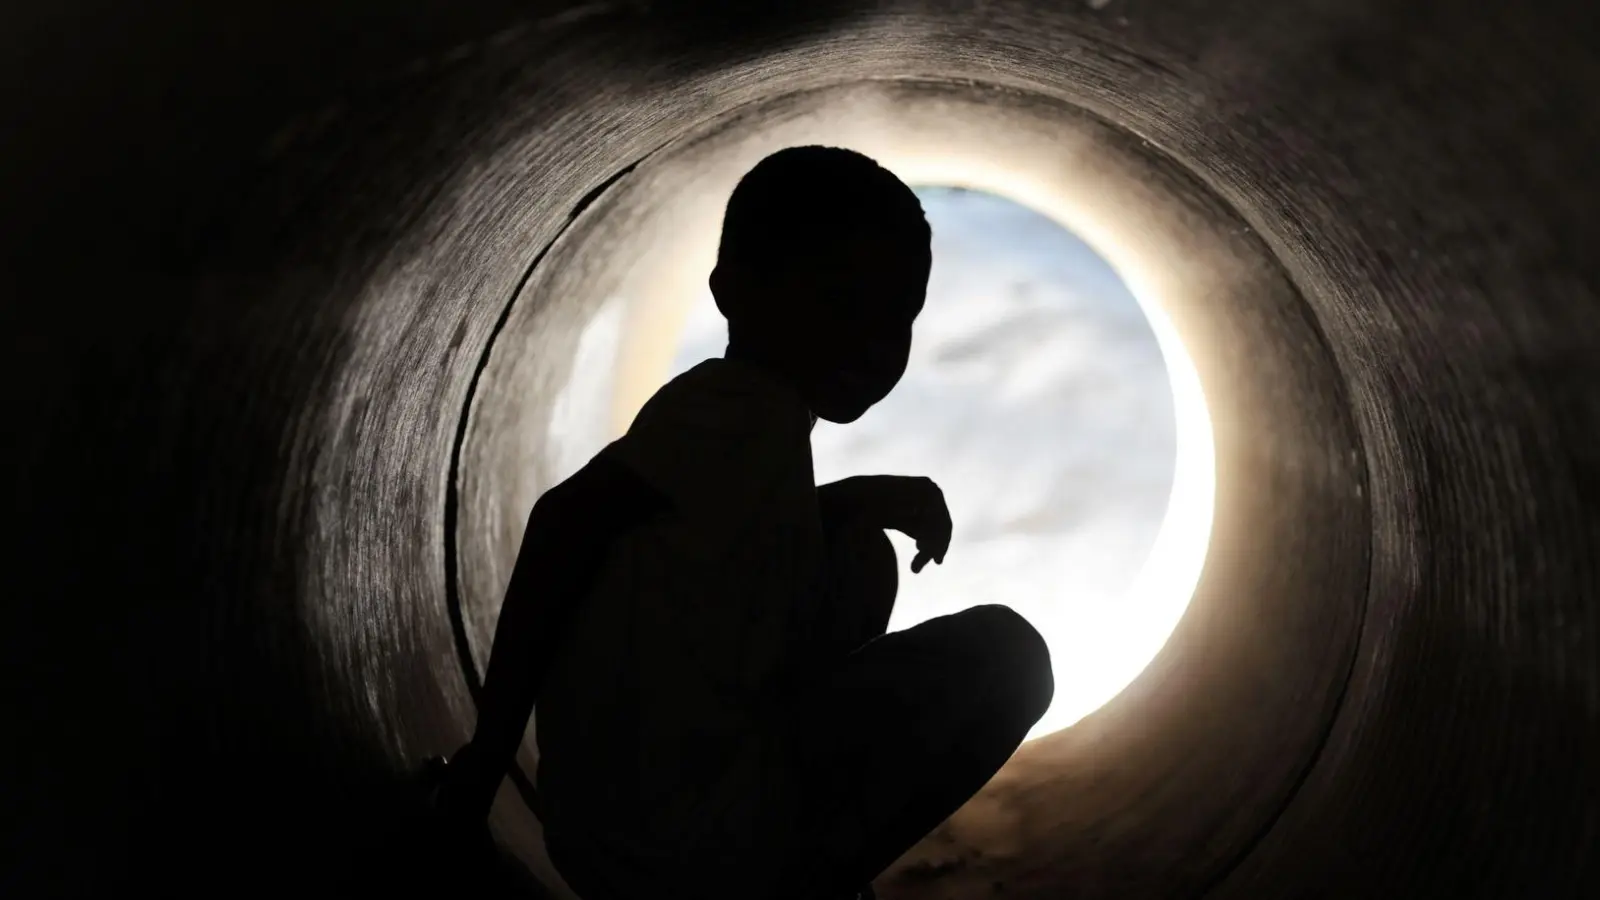 Raus aus dem Loch: Eltern können ihrem Kind helfen, eine depressive Erkrankung zu überwinden. (Foto: Arne Dedert/dpa/dpa-tmn)